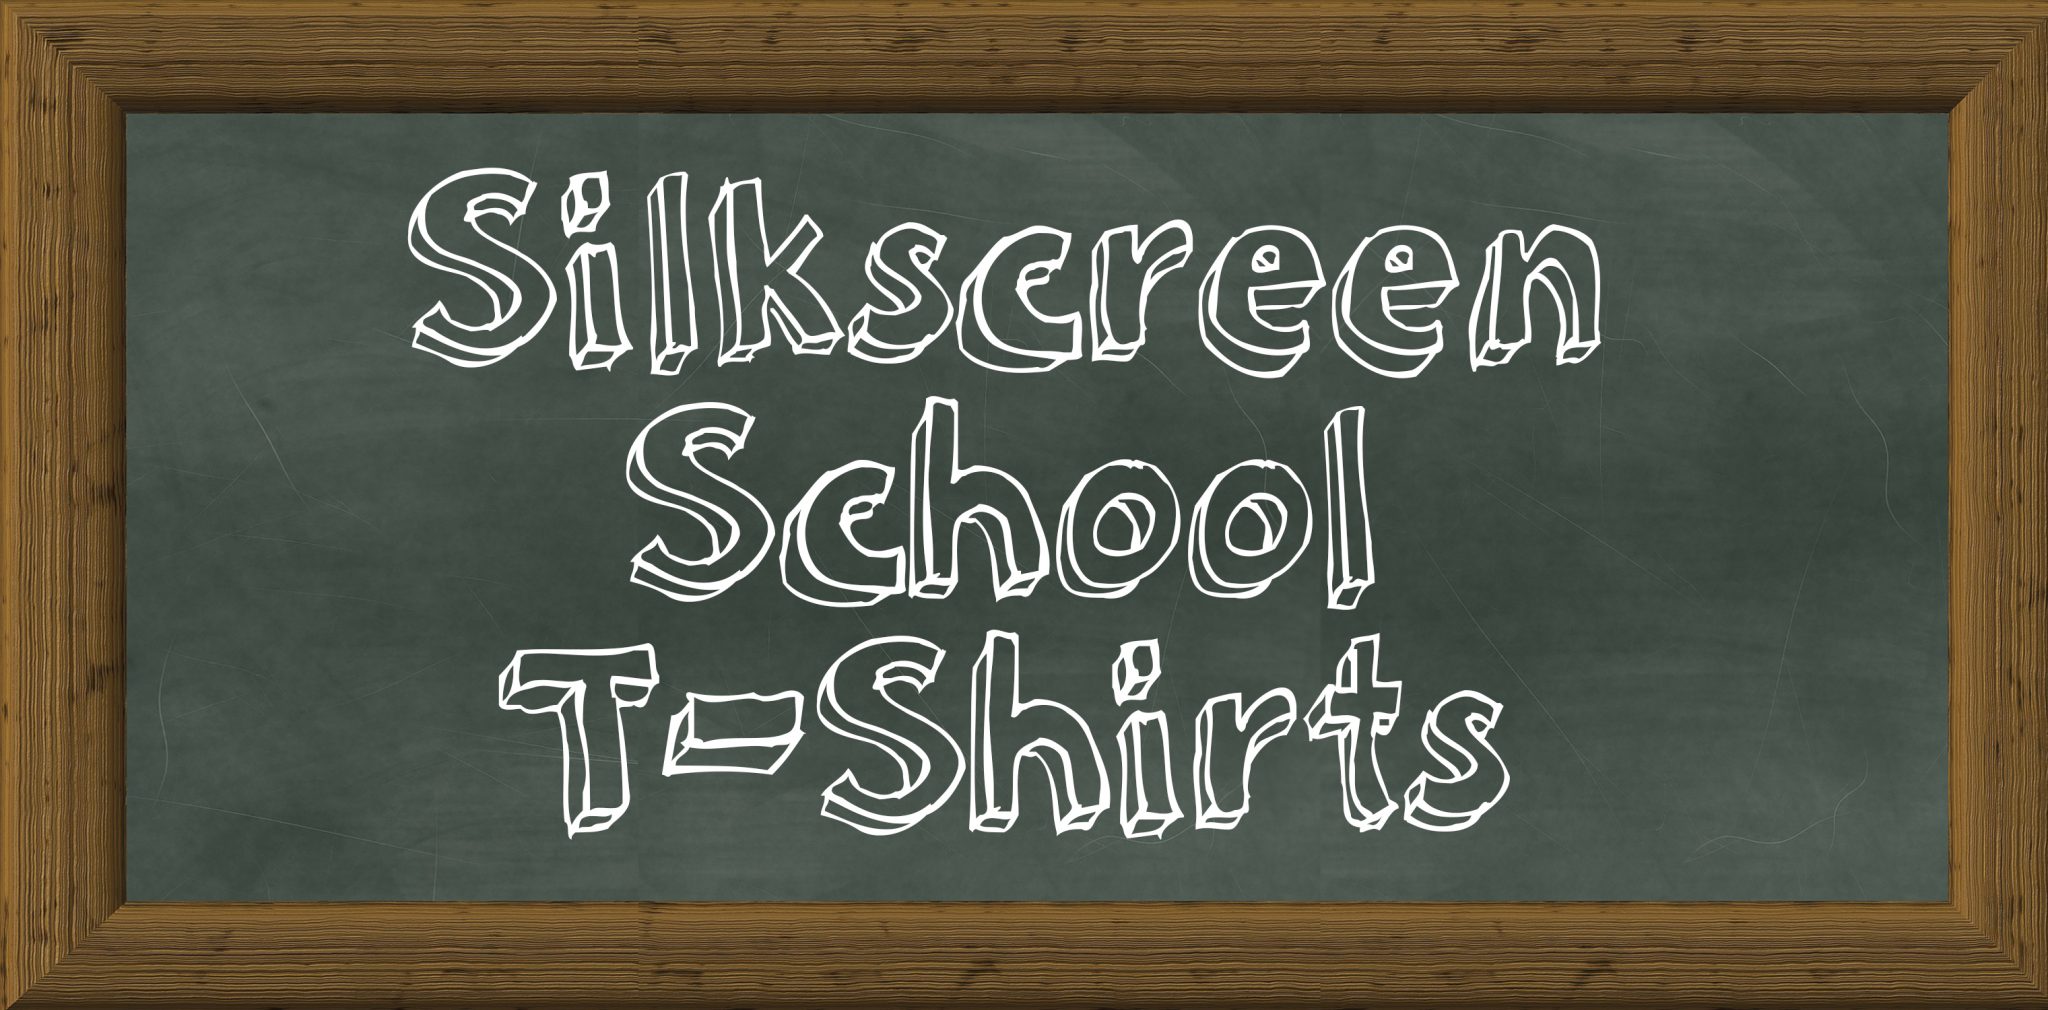 Silkscreen School T-Shirts in a Snap!